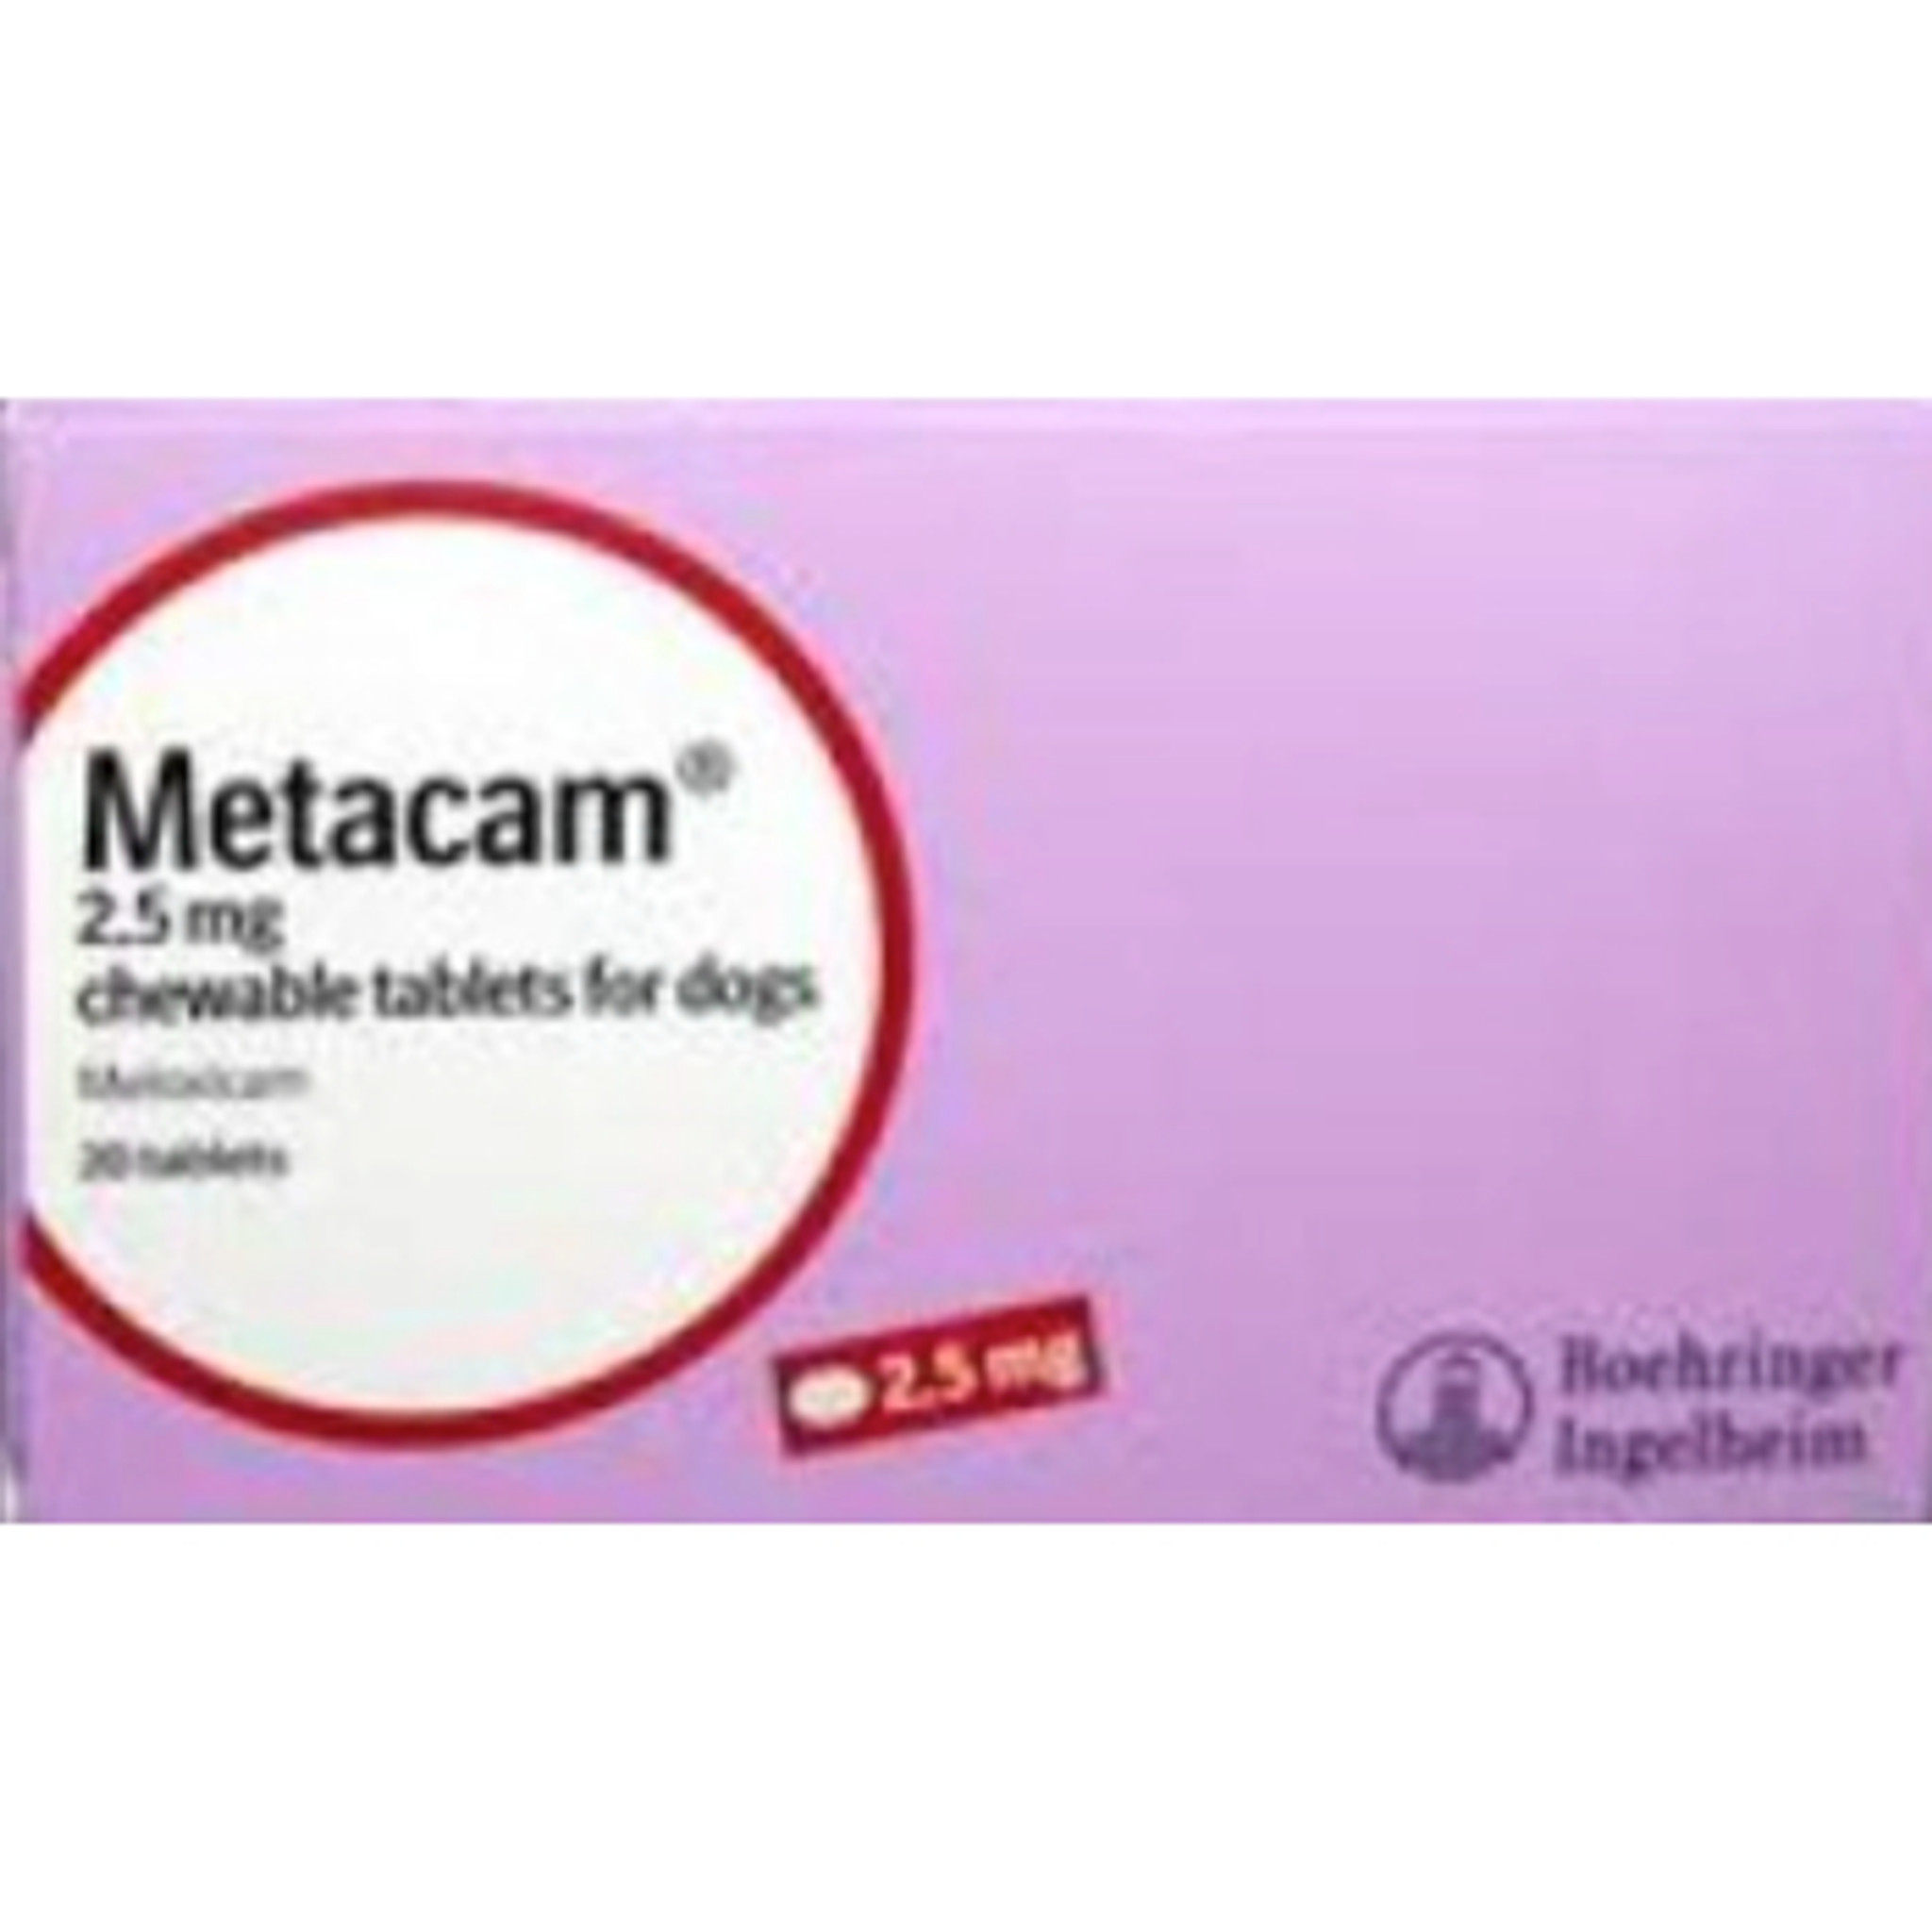 metacam 1 mg for dogs